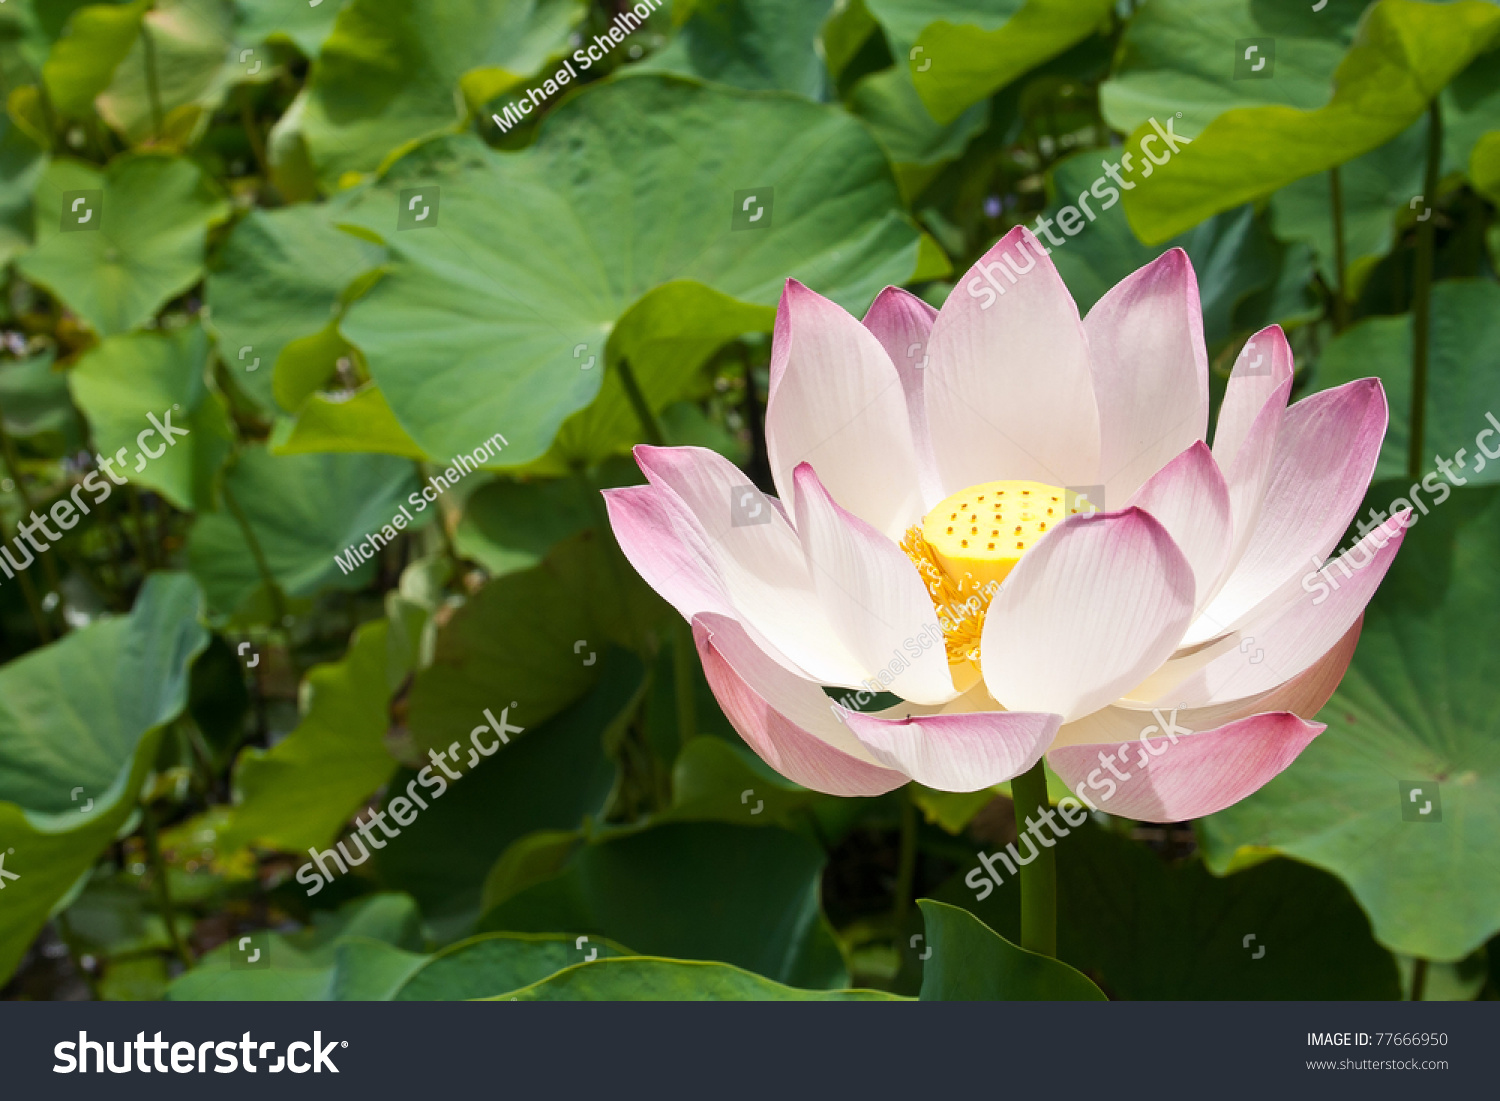 Lotus blossom #77666950